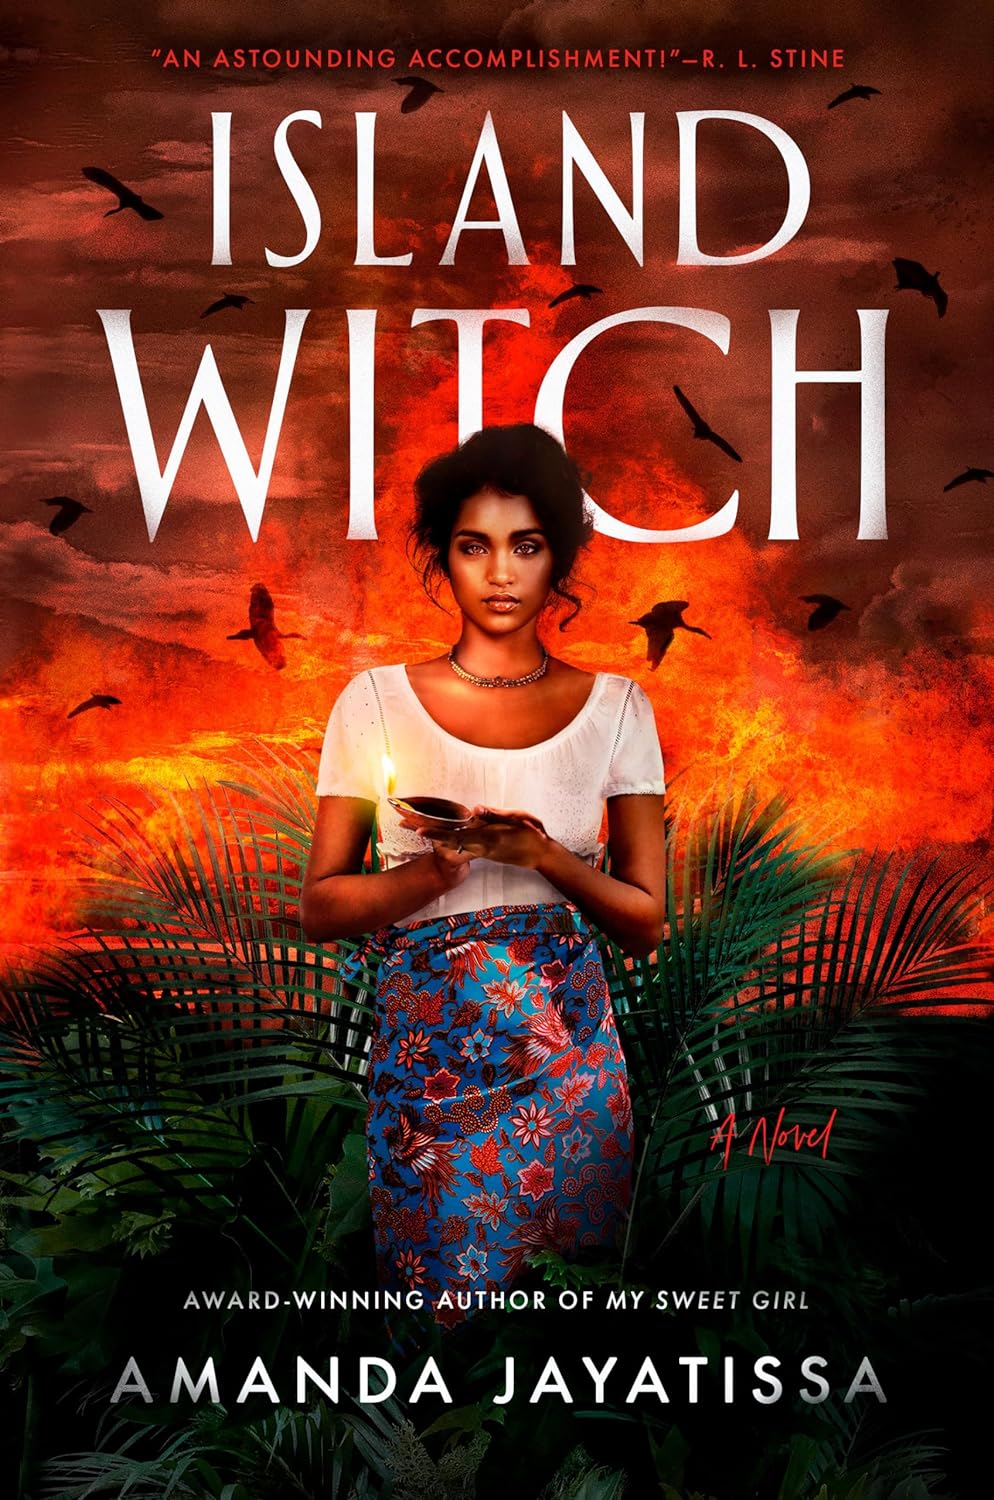 The Island Witch by Amanda Jayatissa